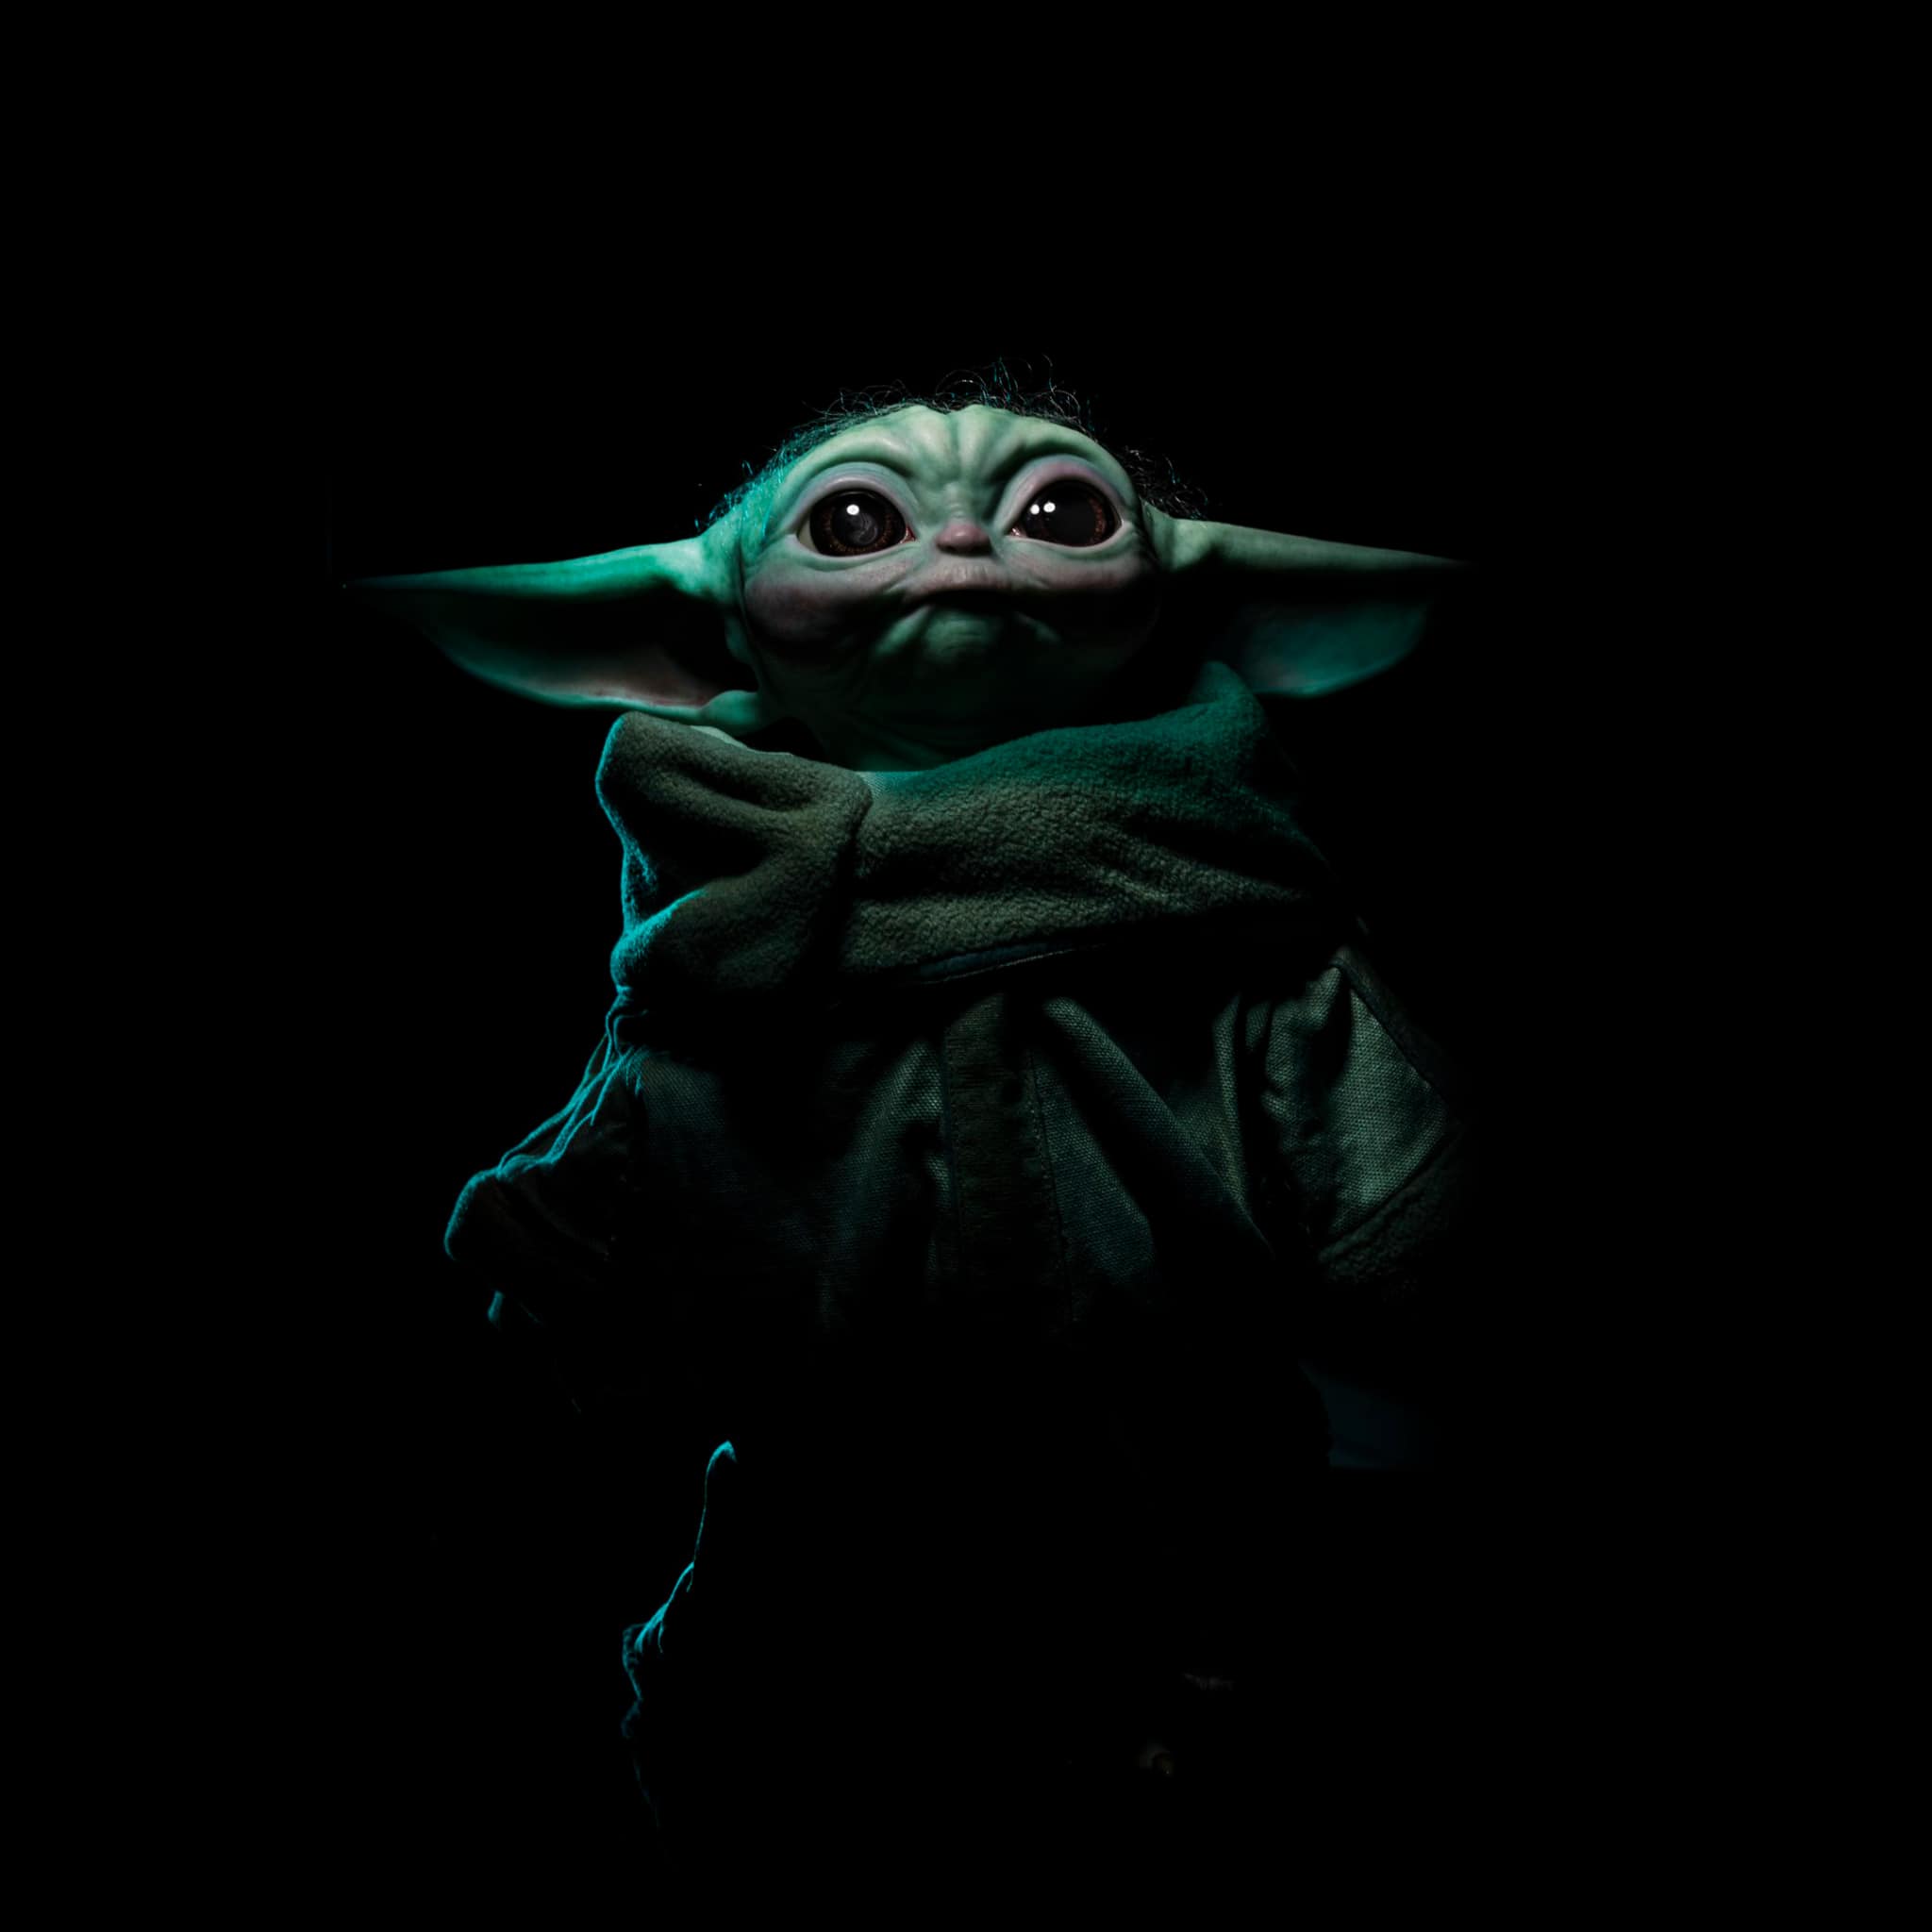 Baby Yoda: Đây là hình ảnh đáng yêu nhất mà bạn sẽ thấy hôm nay! Một chú bé Yoda nhỏ bé và đáng yêu đang chờ bạn khám phá. Chắc chắn bạn sẽ không muốn bỏ lỡ cơ hội để chiêm ngưỡng hình ảnh của chú ấy!